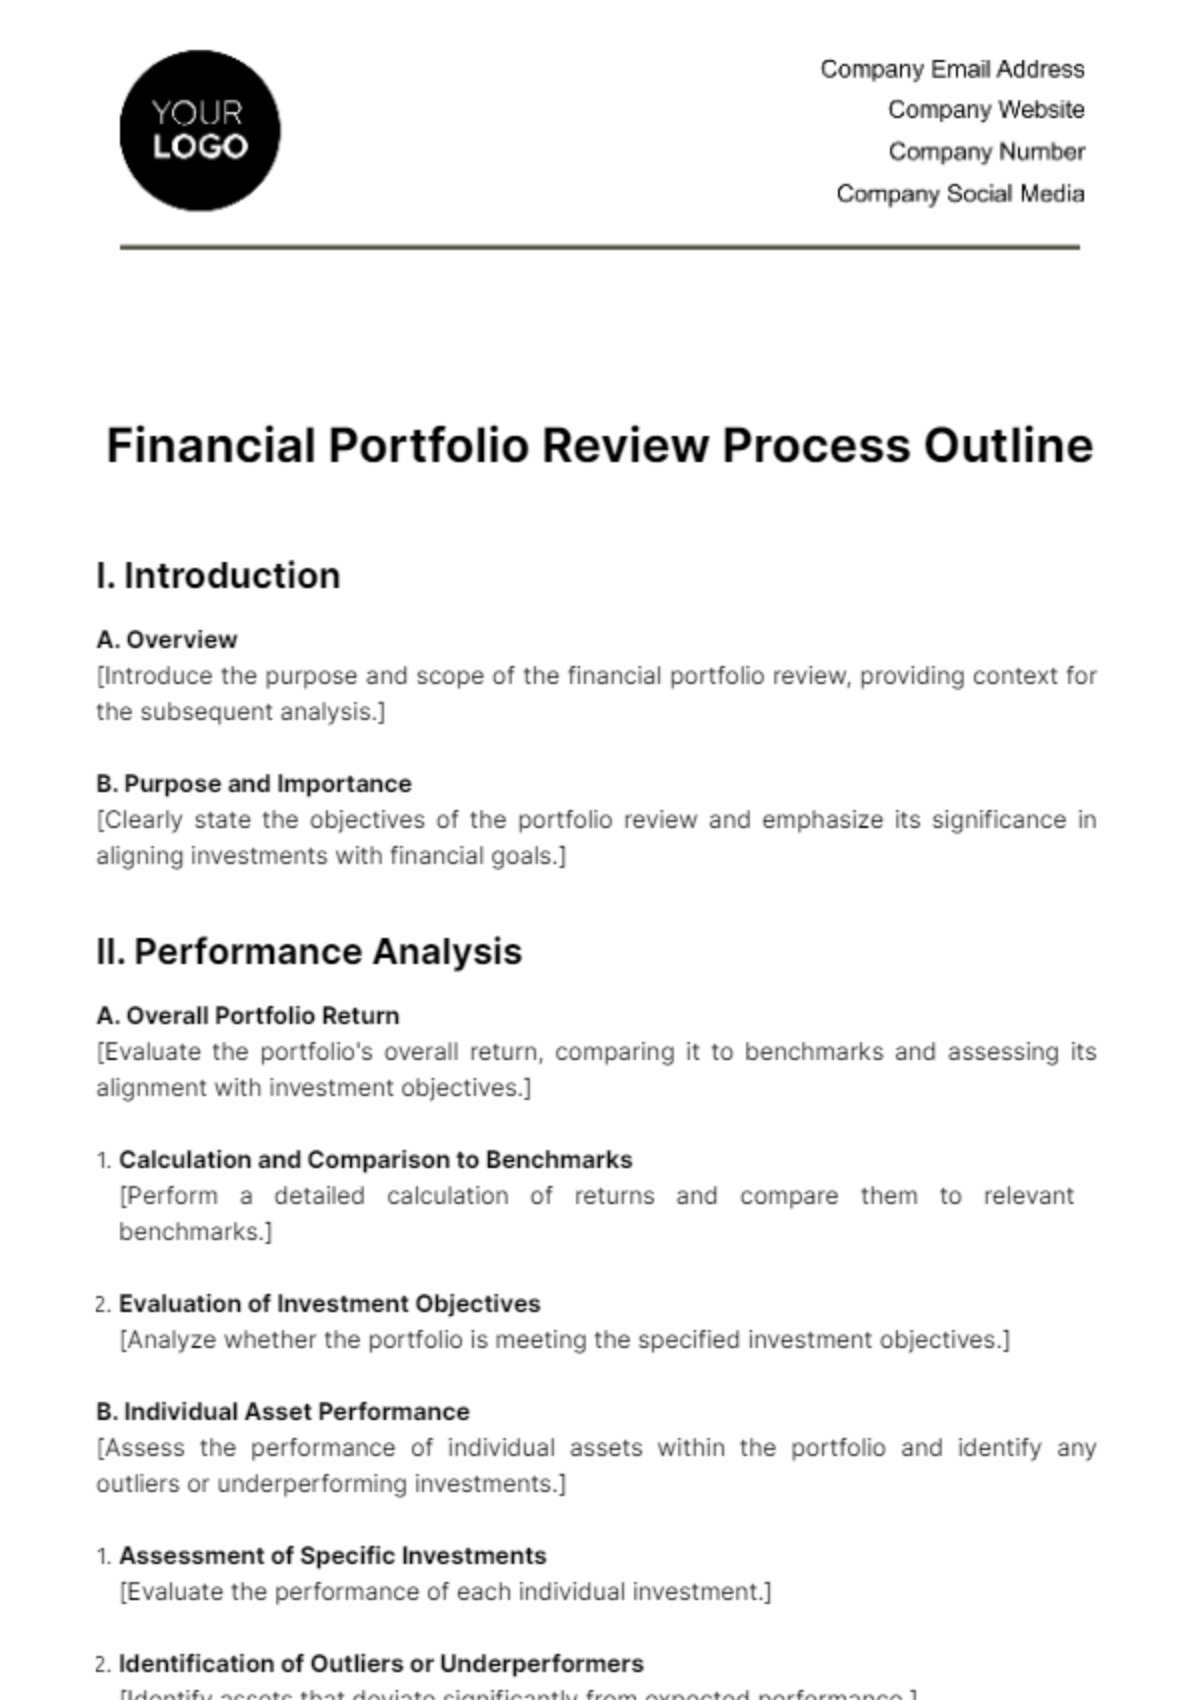 Free Financial Portfolio Review Process Outline Template